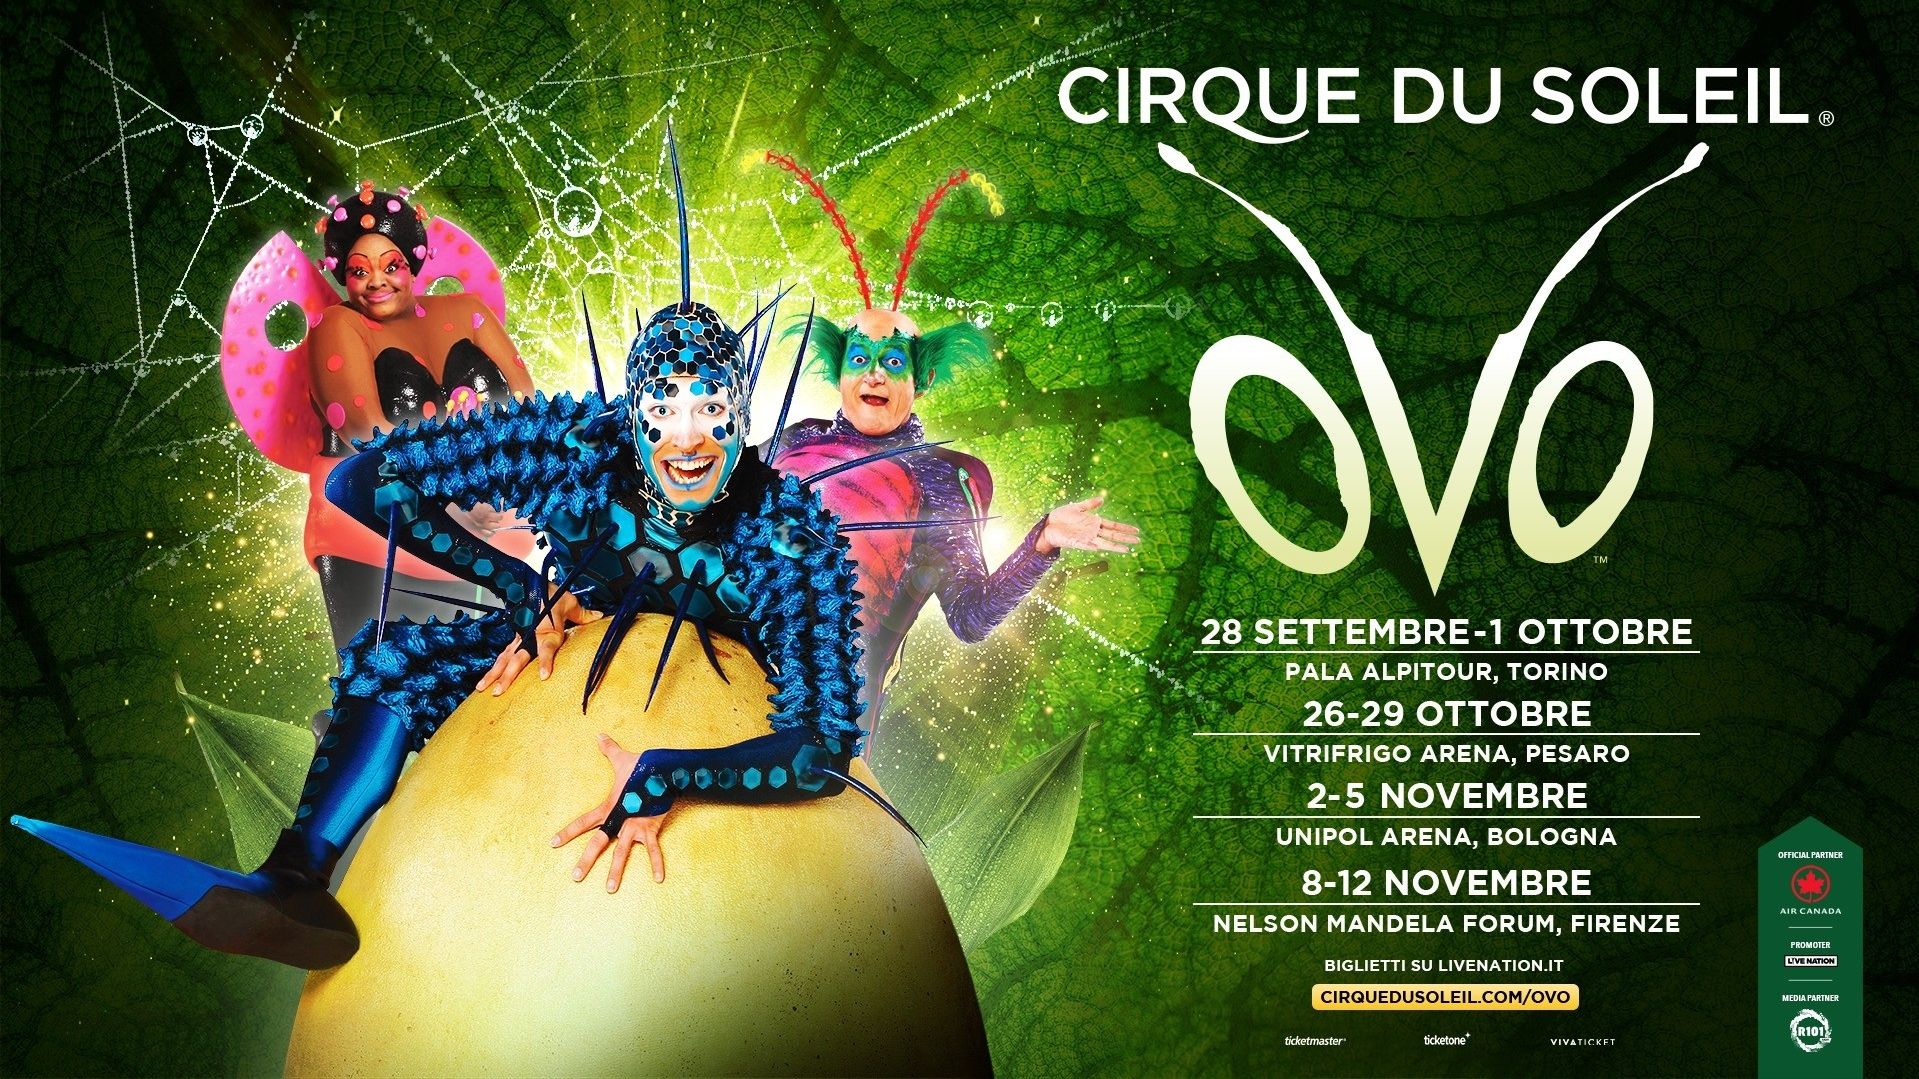 Cirque du Soleil "OVO"